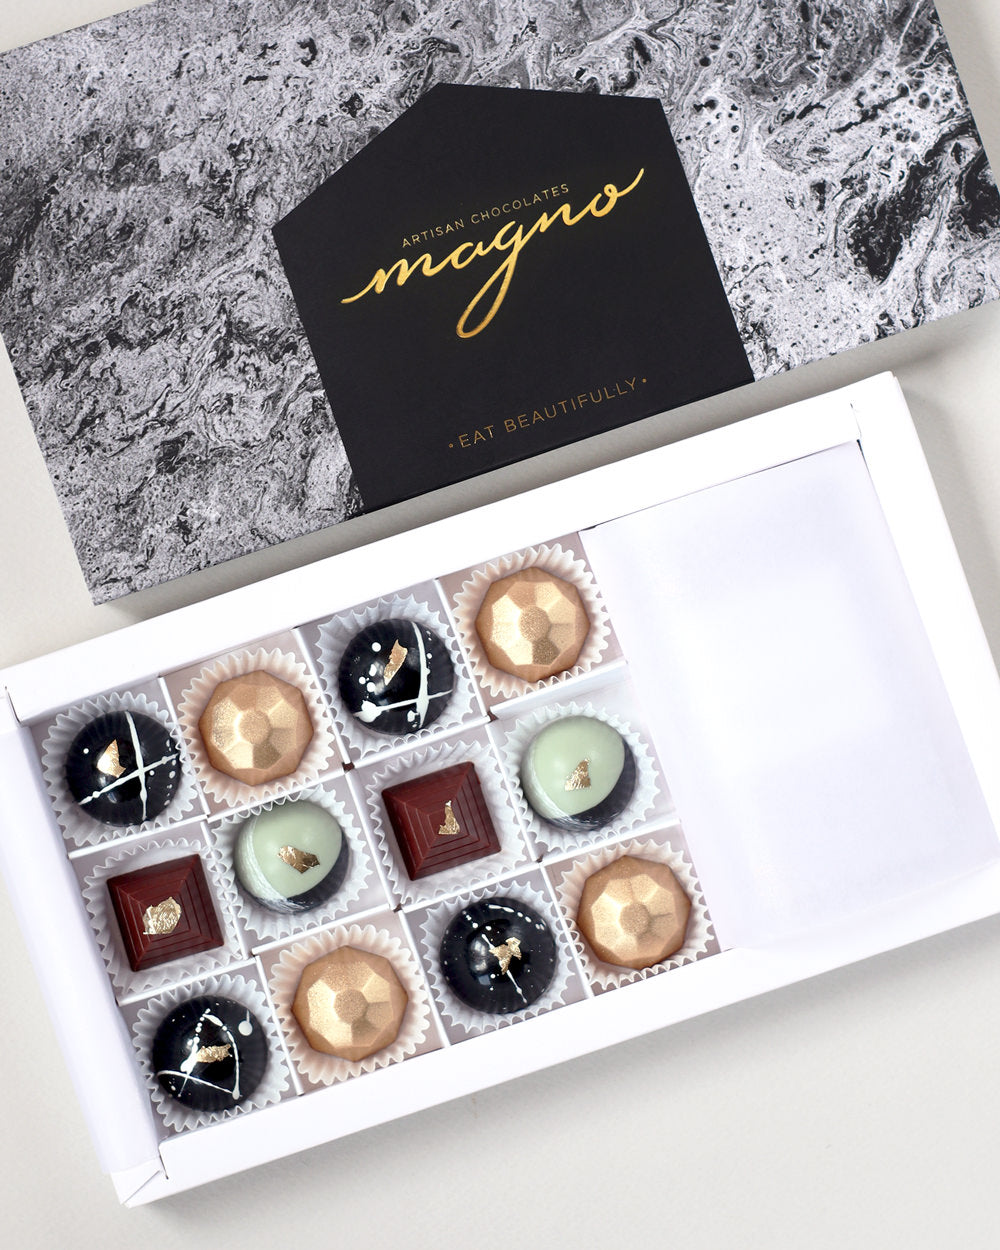 Lunar Gems Virtual Chocolate Tasting Kit